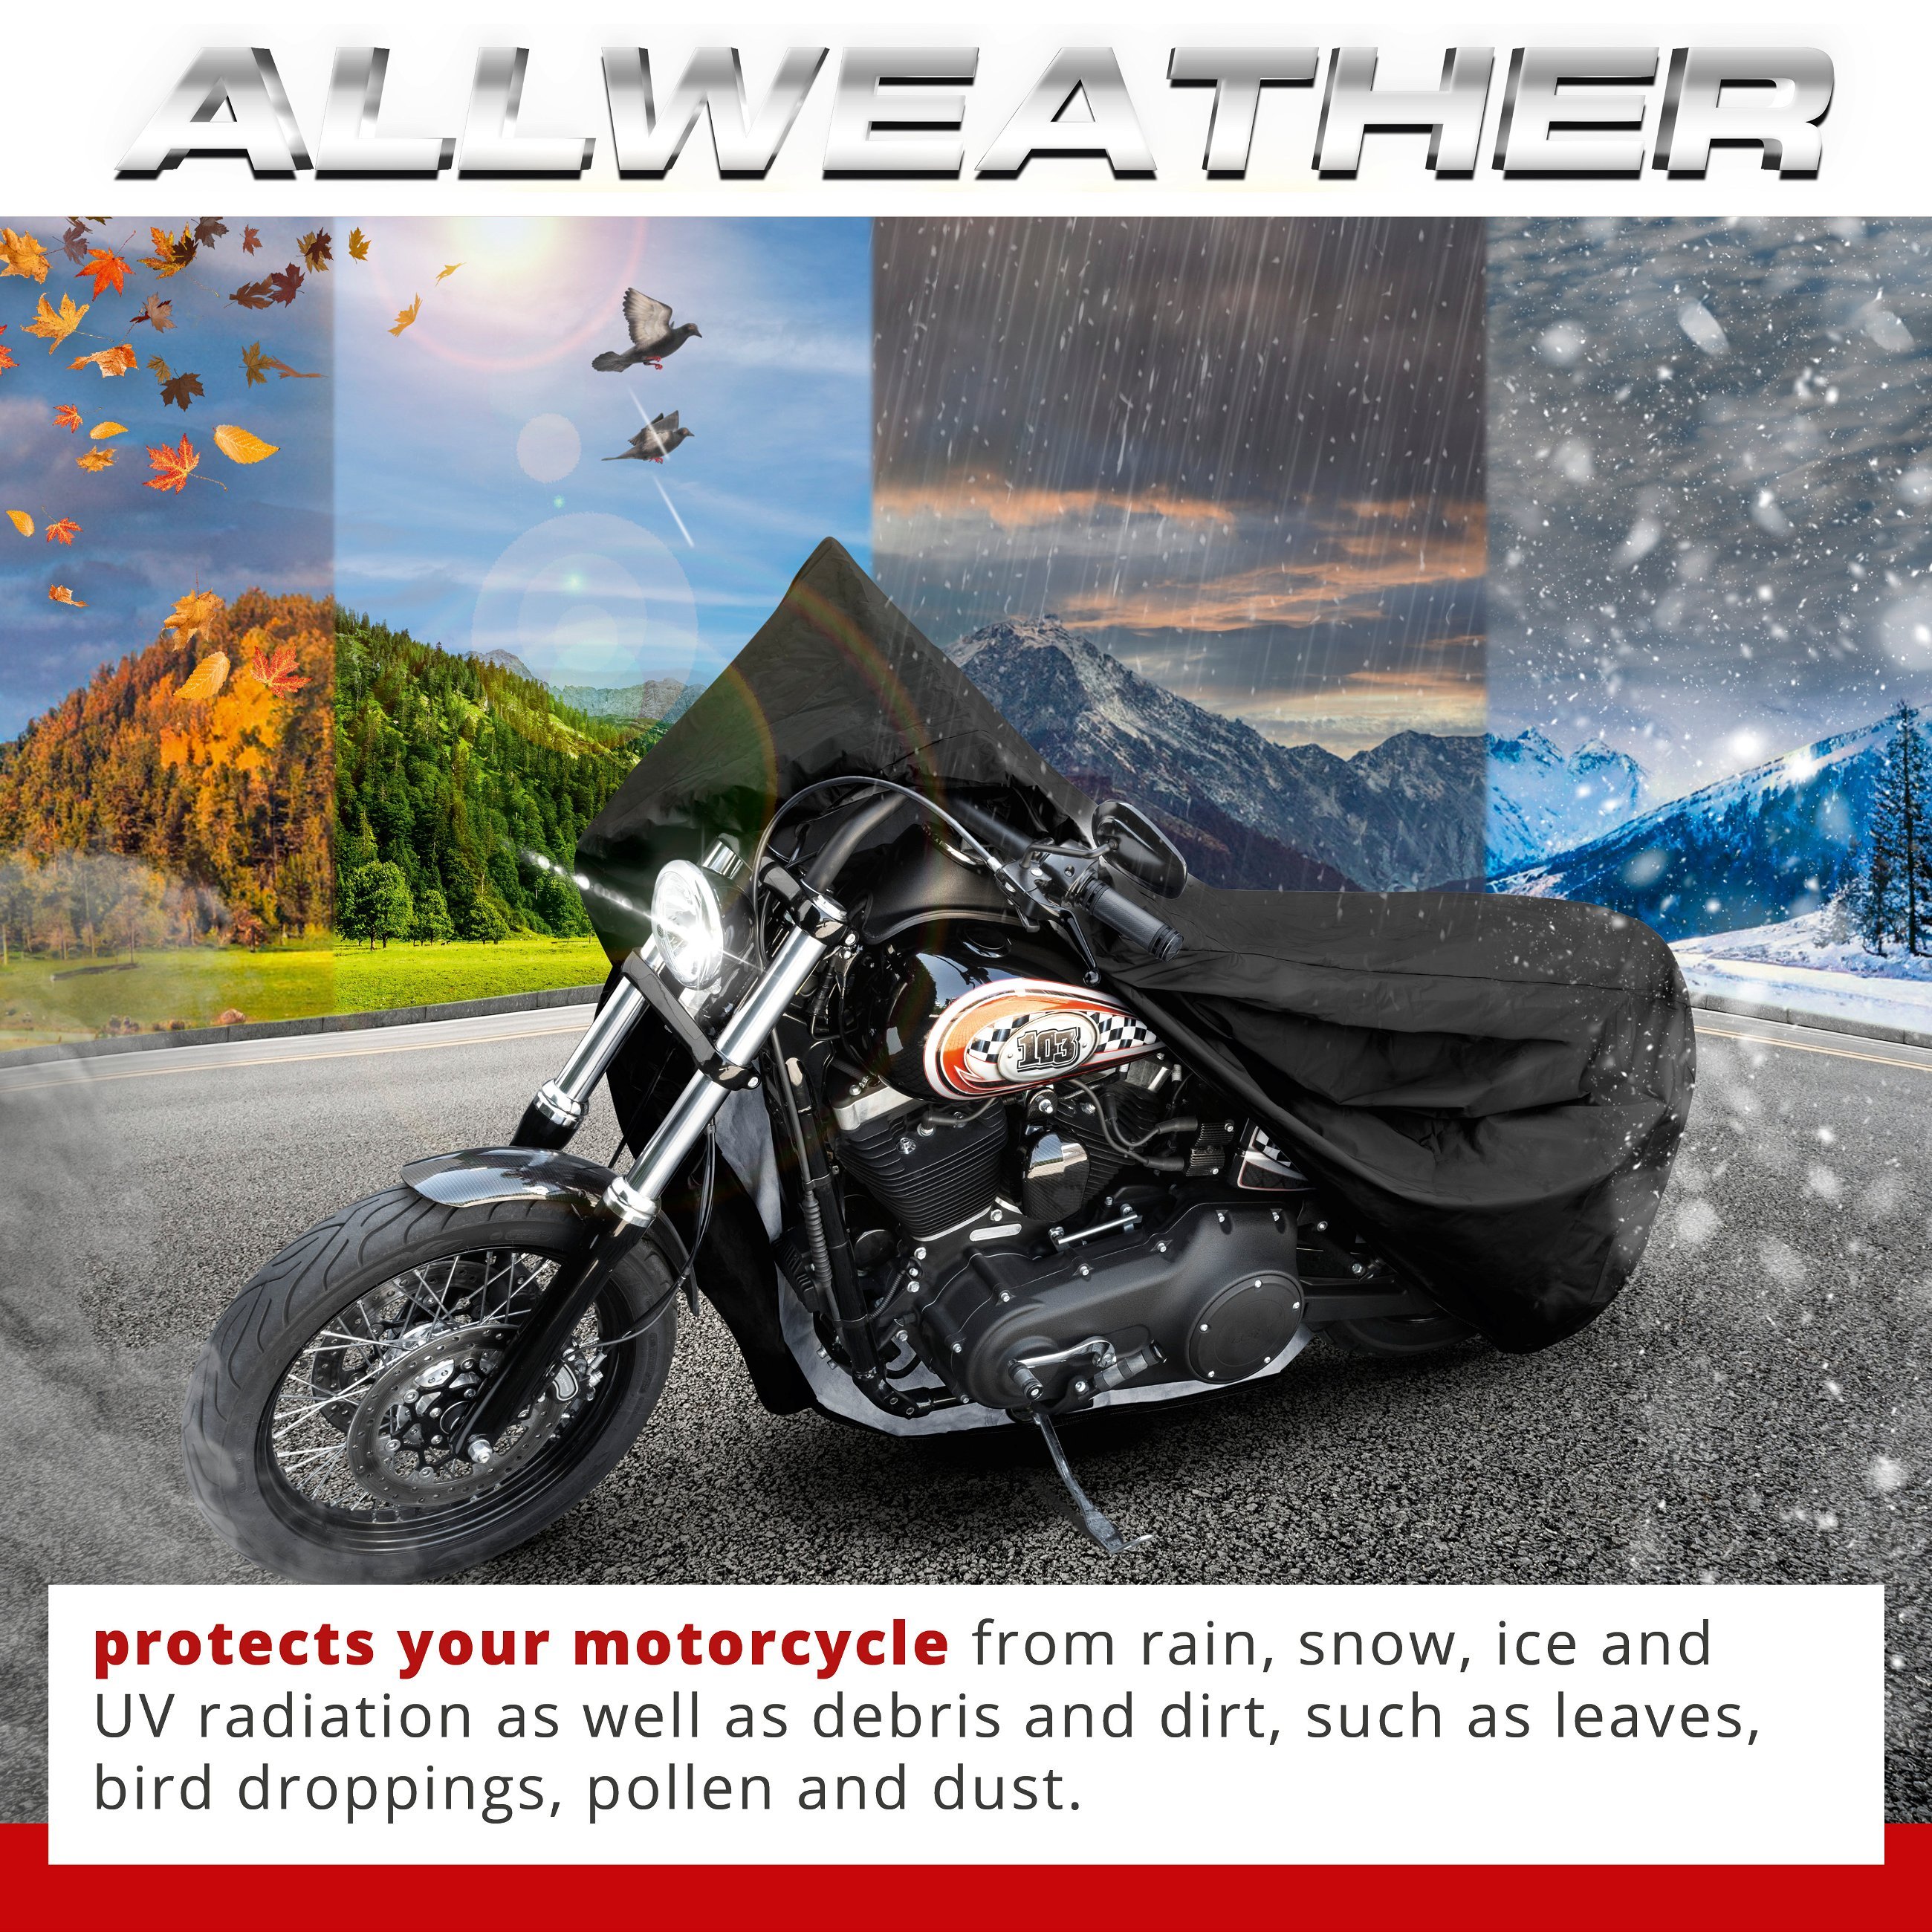 Motorcycle garage Chopper size L PVC - 250 x 100 x 130 cm black